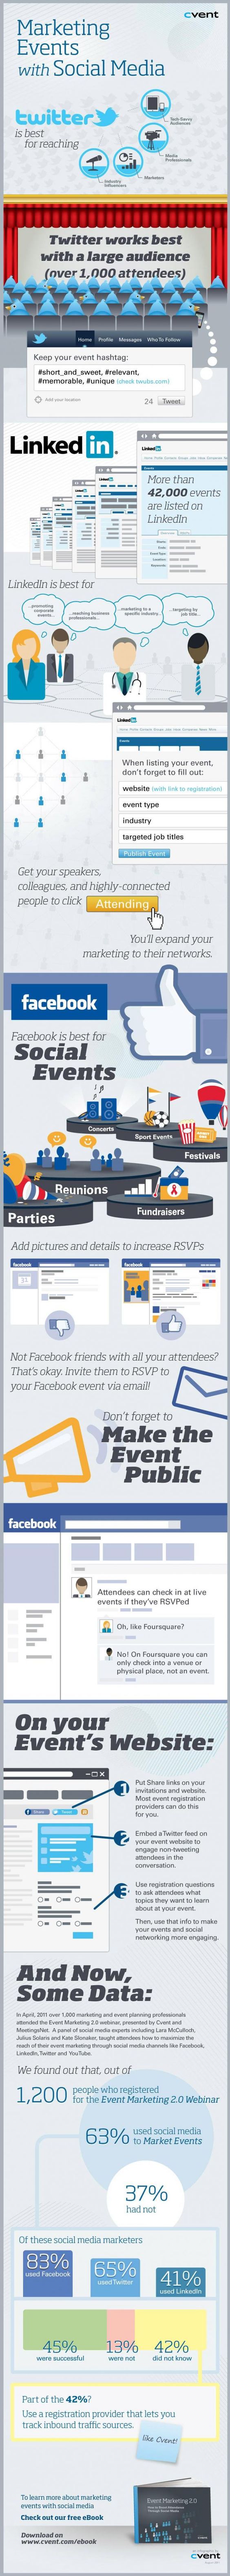 marketing_eventos_redes_sociales